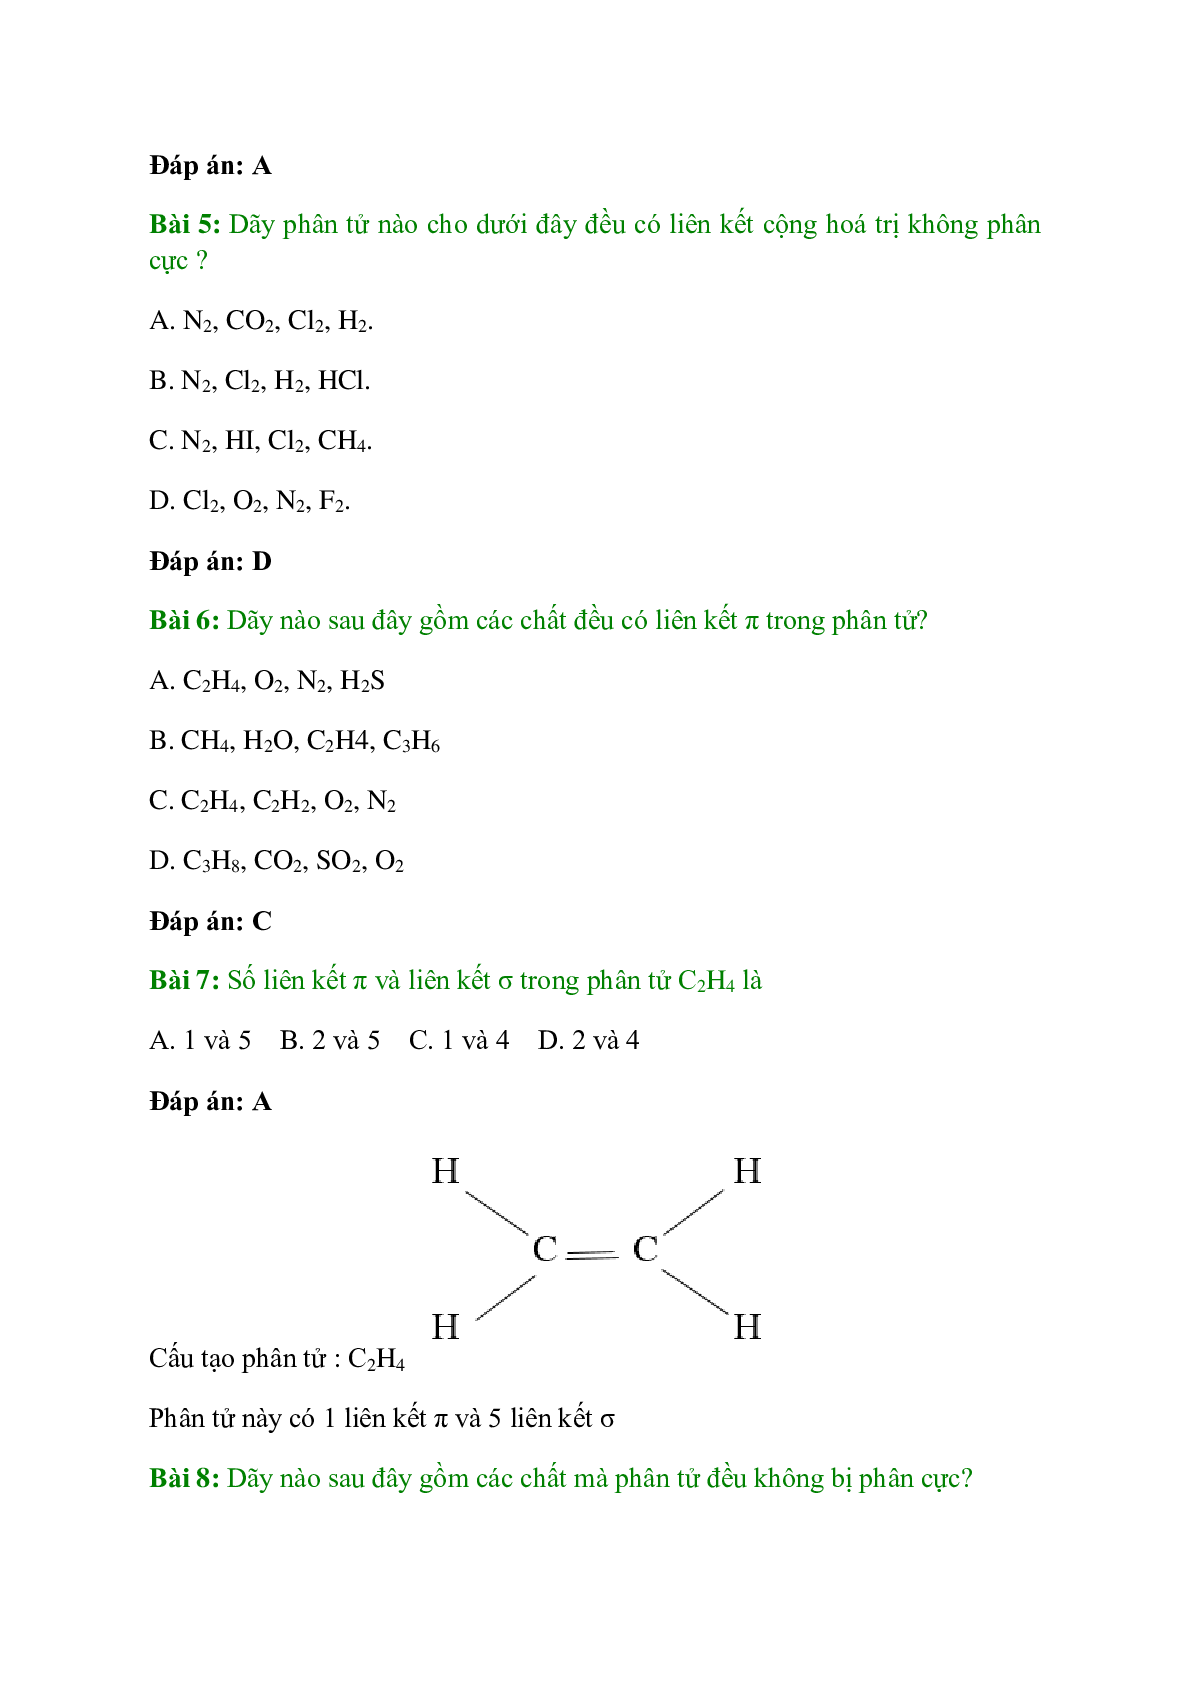 Trắc nghiệm Liên kết cộng hóa trị có đáp án - Hóa học 10 (trang 2)